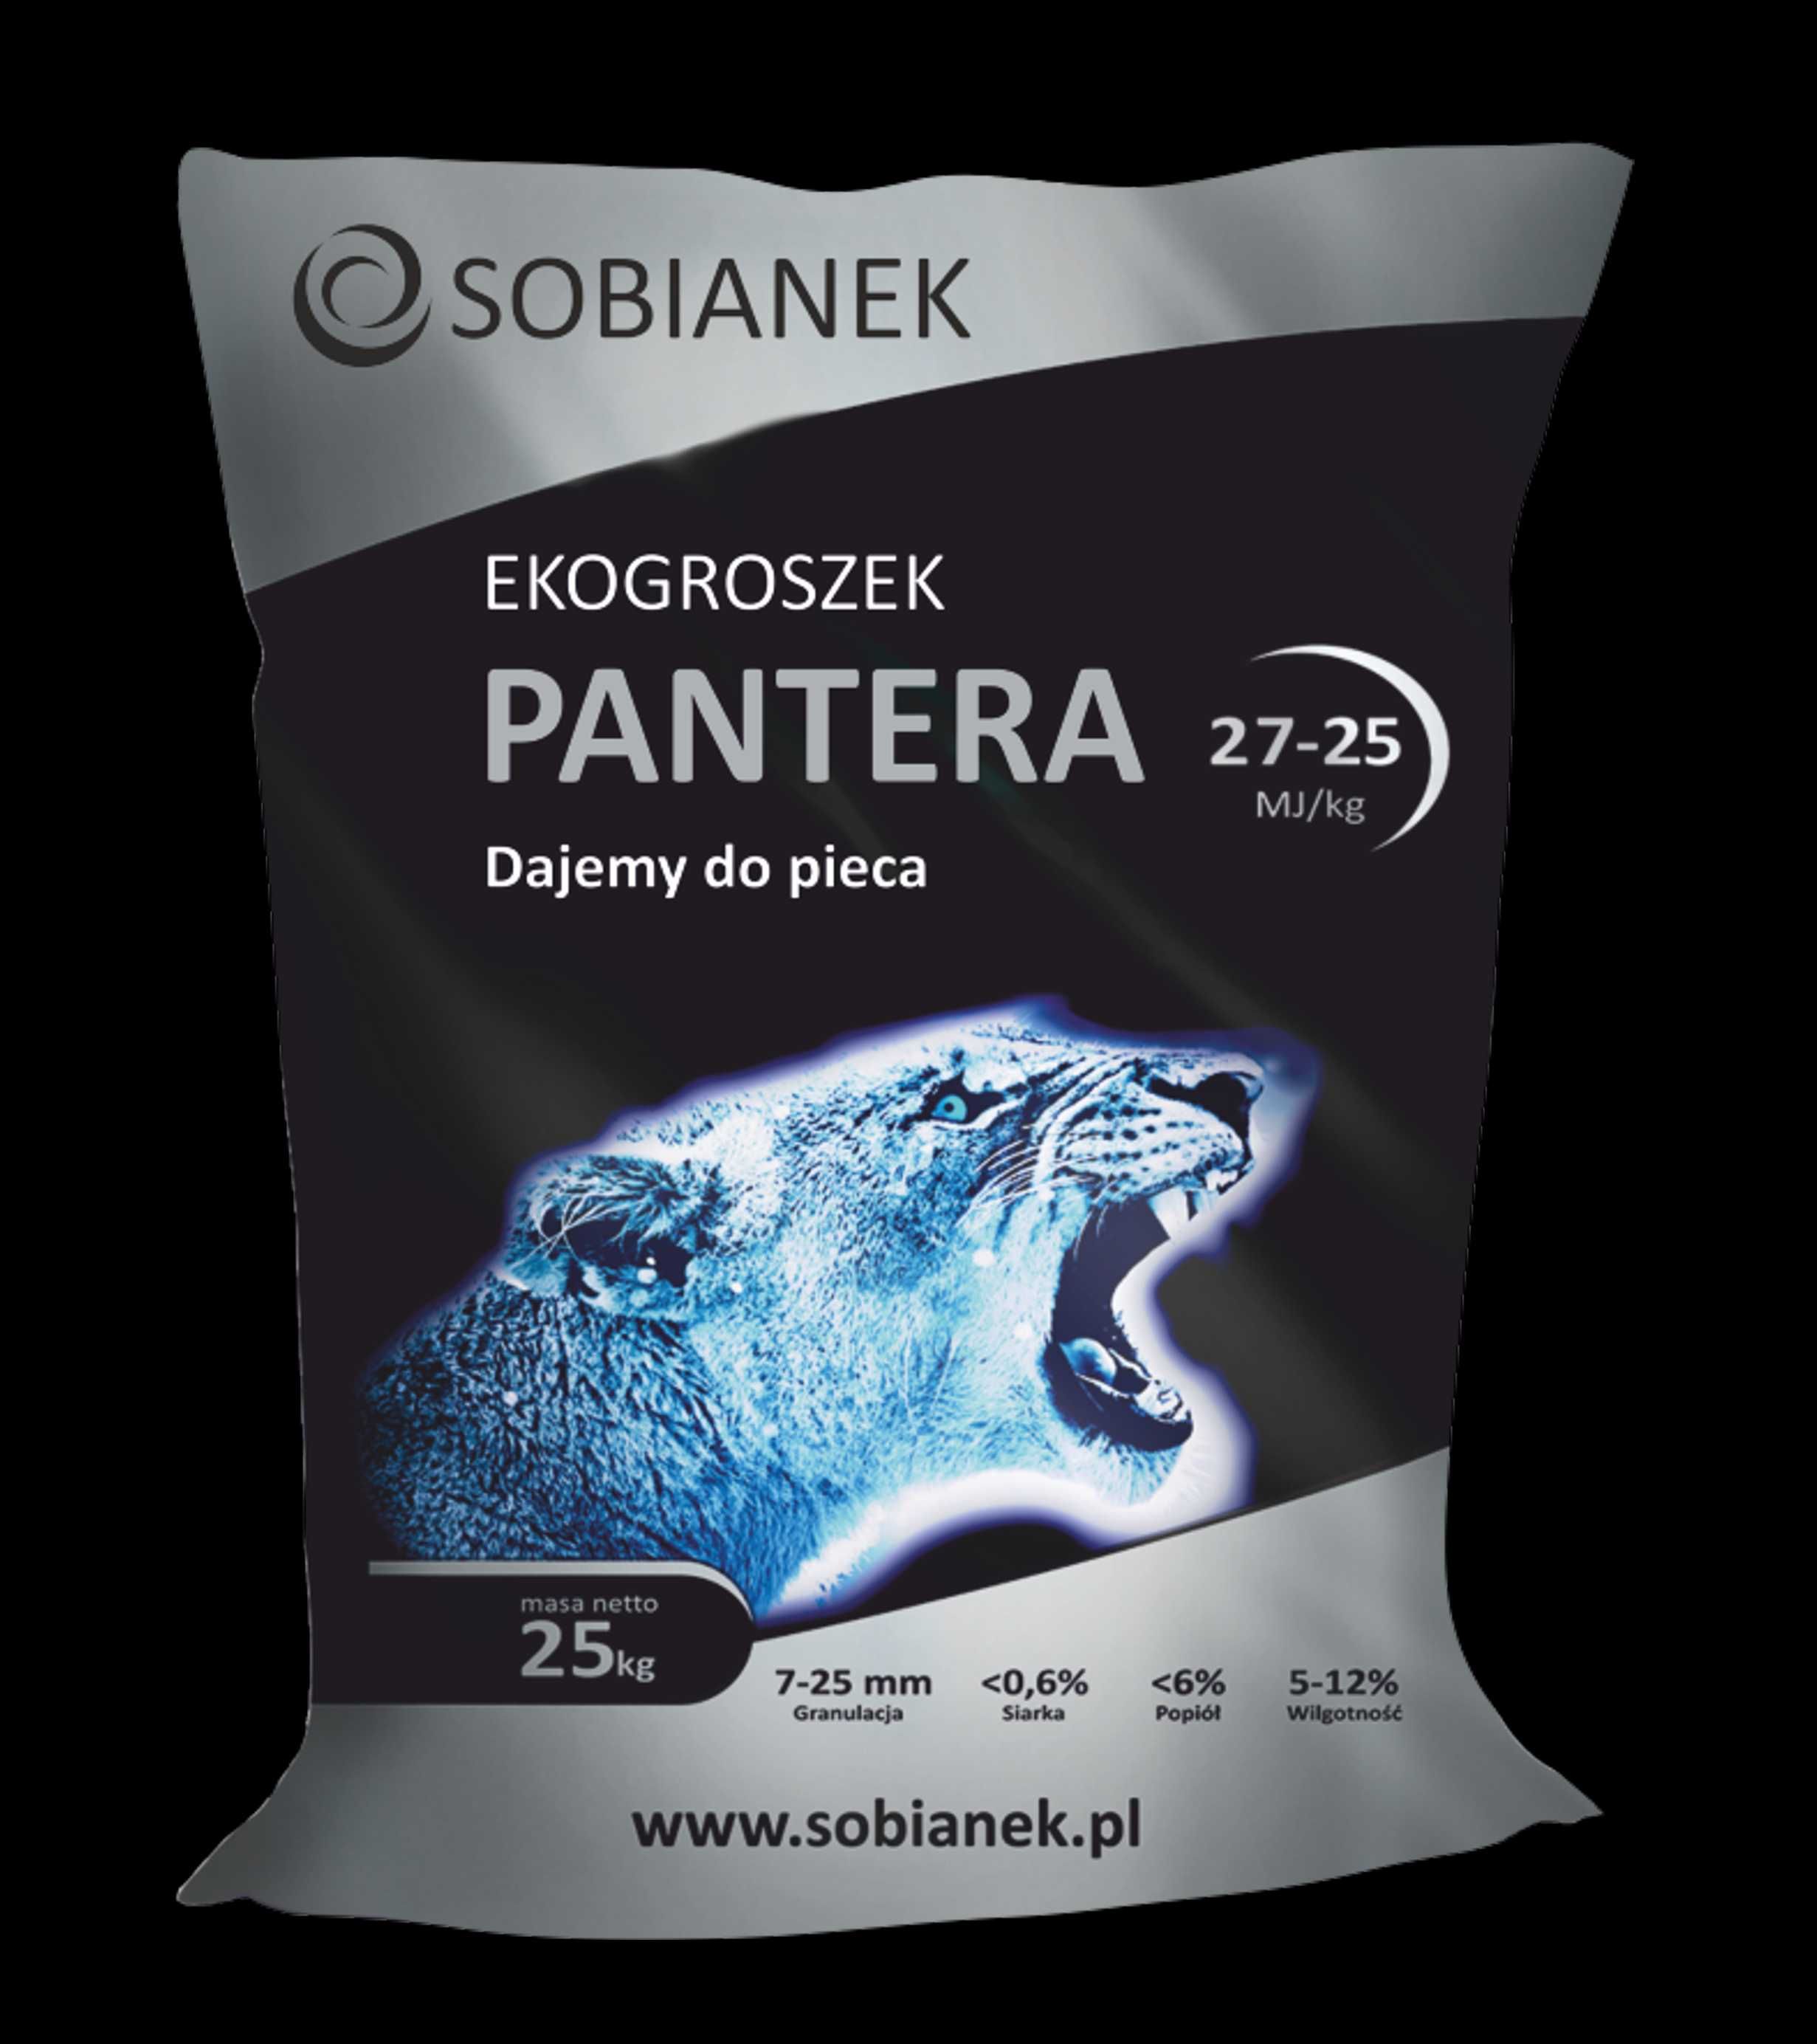 ekogroszek Sobianek Pantera, pellet Poltarex